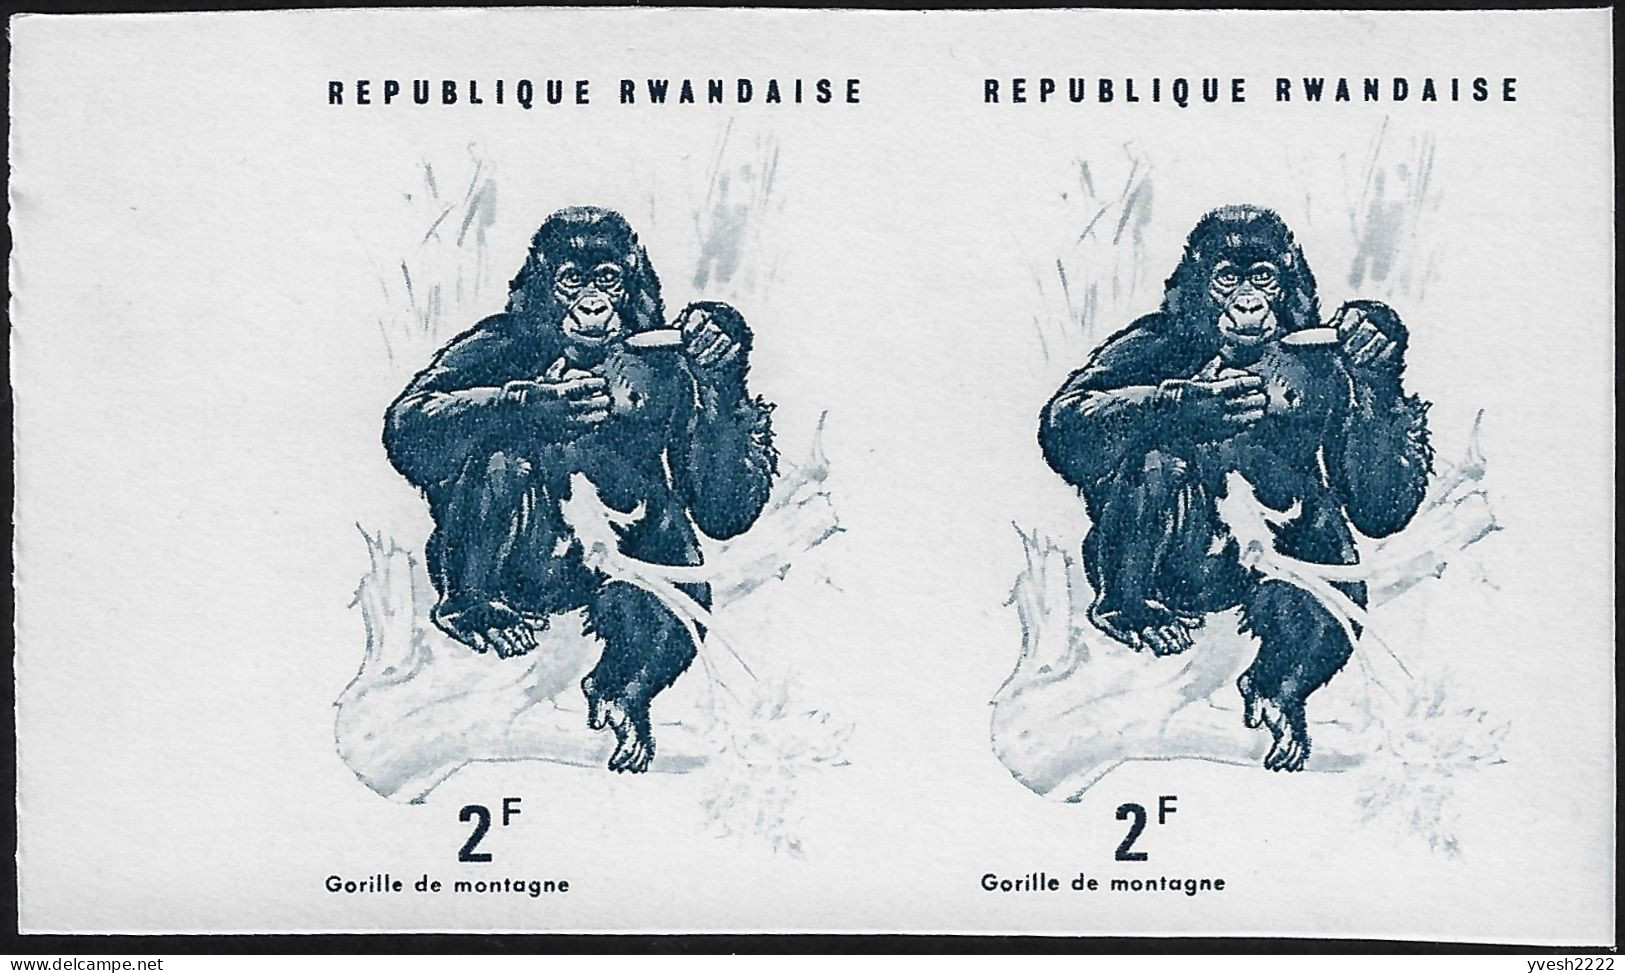 Rwanda 1970 Y&T 375. 7 essais de couleurs offset en paires, procédé inhabituel. Gorille des montagnes et banane